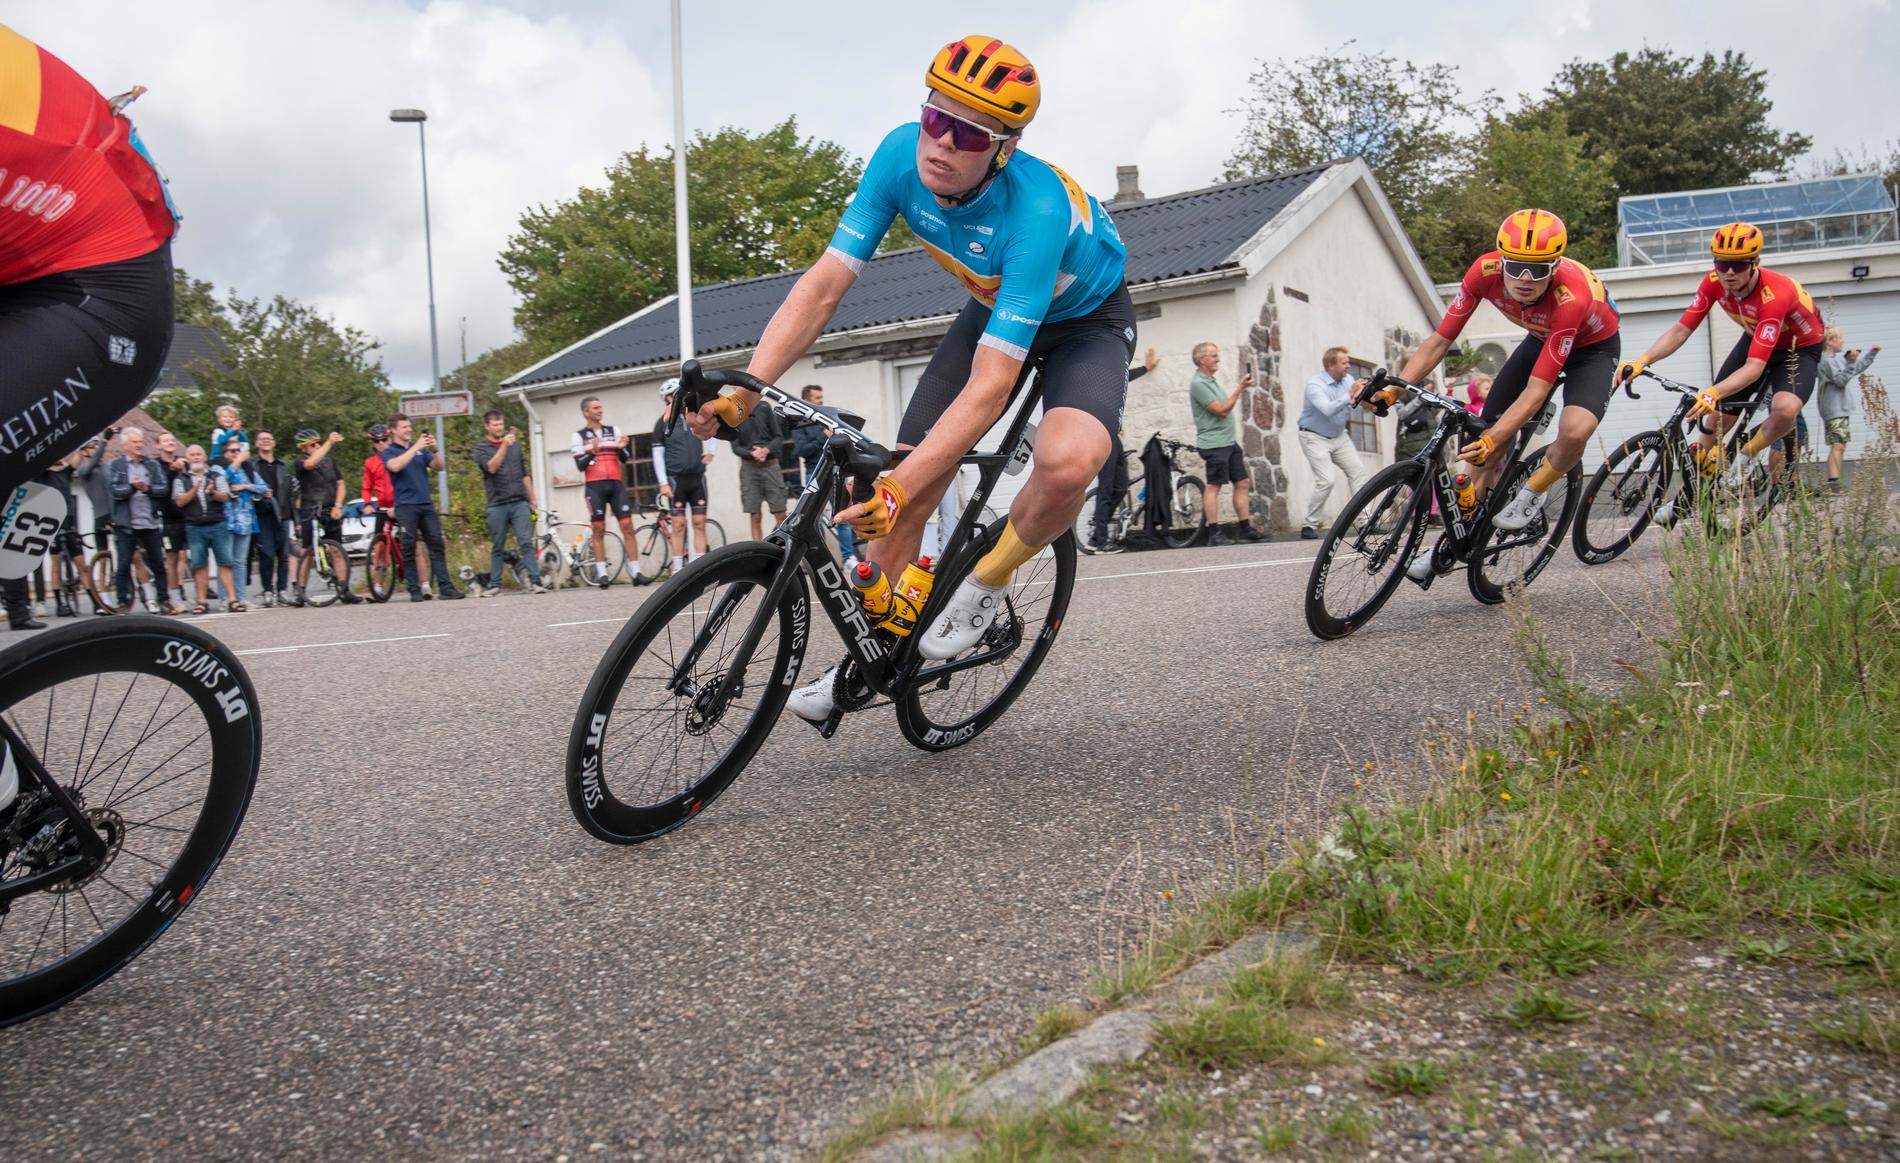 Soren Wernskjold broke through to the top spot in Denmark in the all-around